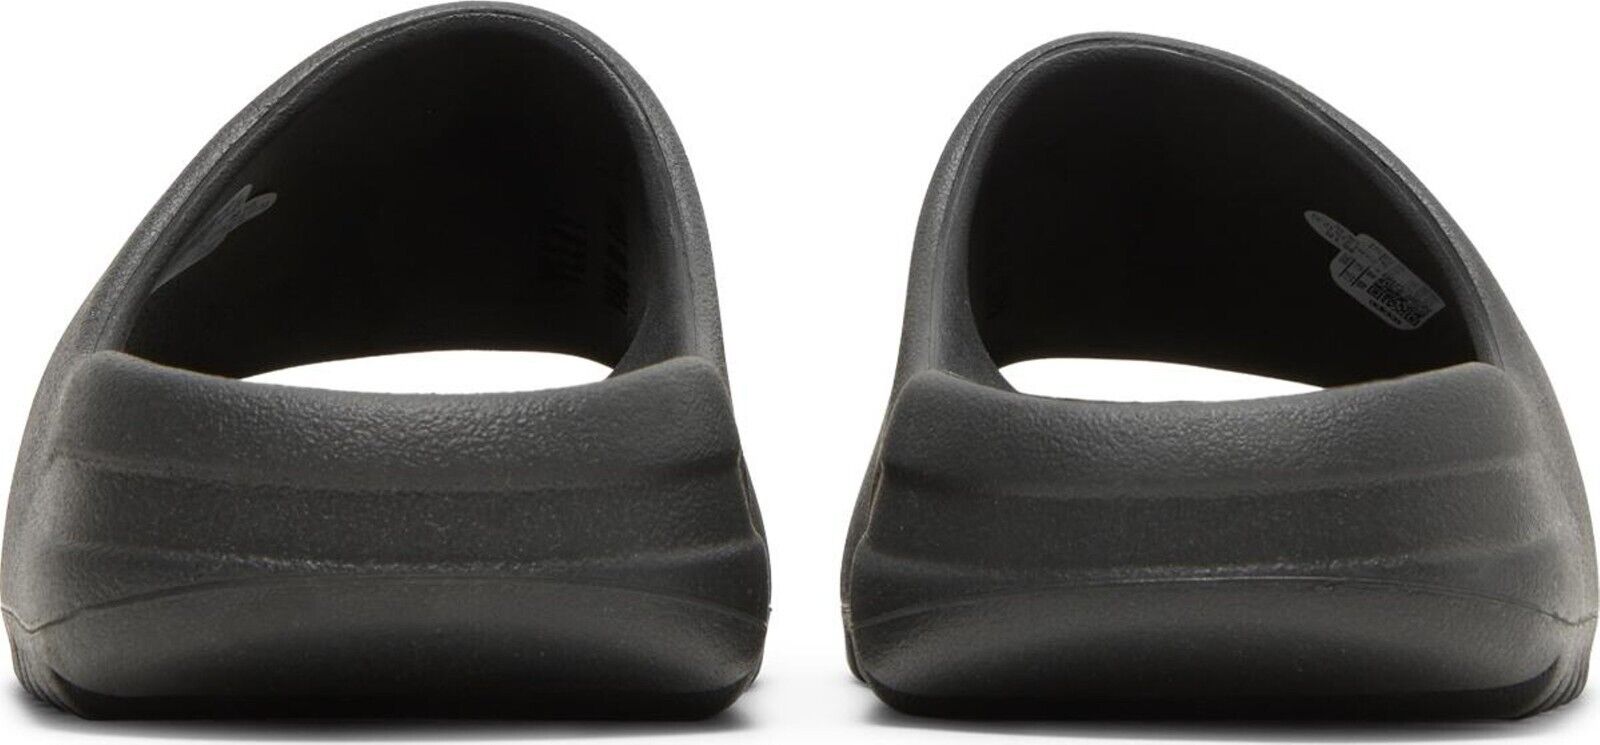 Adidas Yeezy Slide Onyx HQ6448 Men's New Size 4-16 | eBay